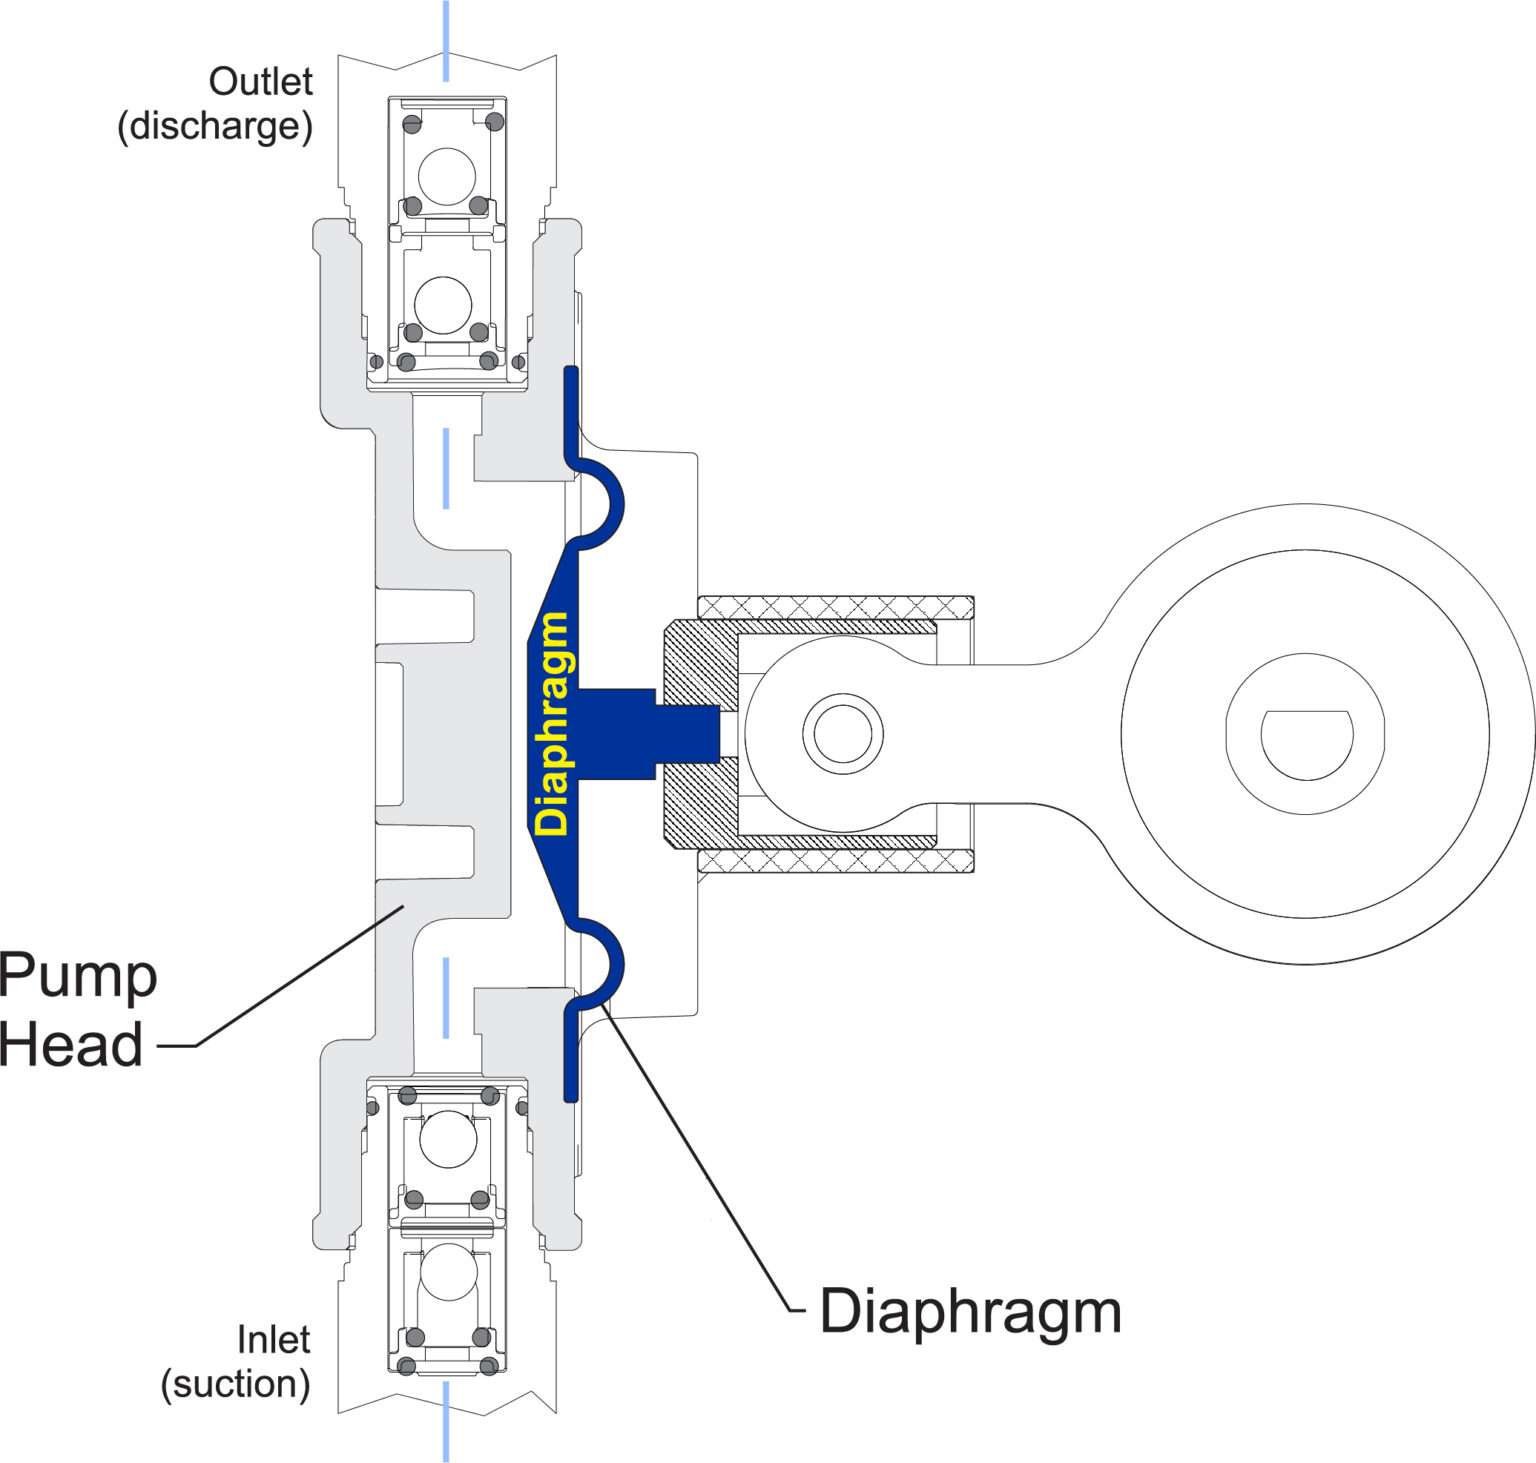 Diagrama del principio de funcionamiento de la bomba de diafragma